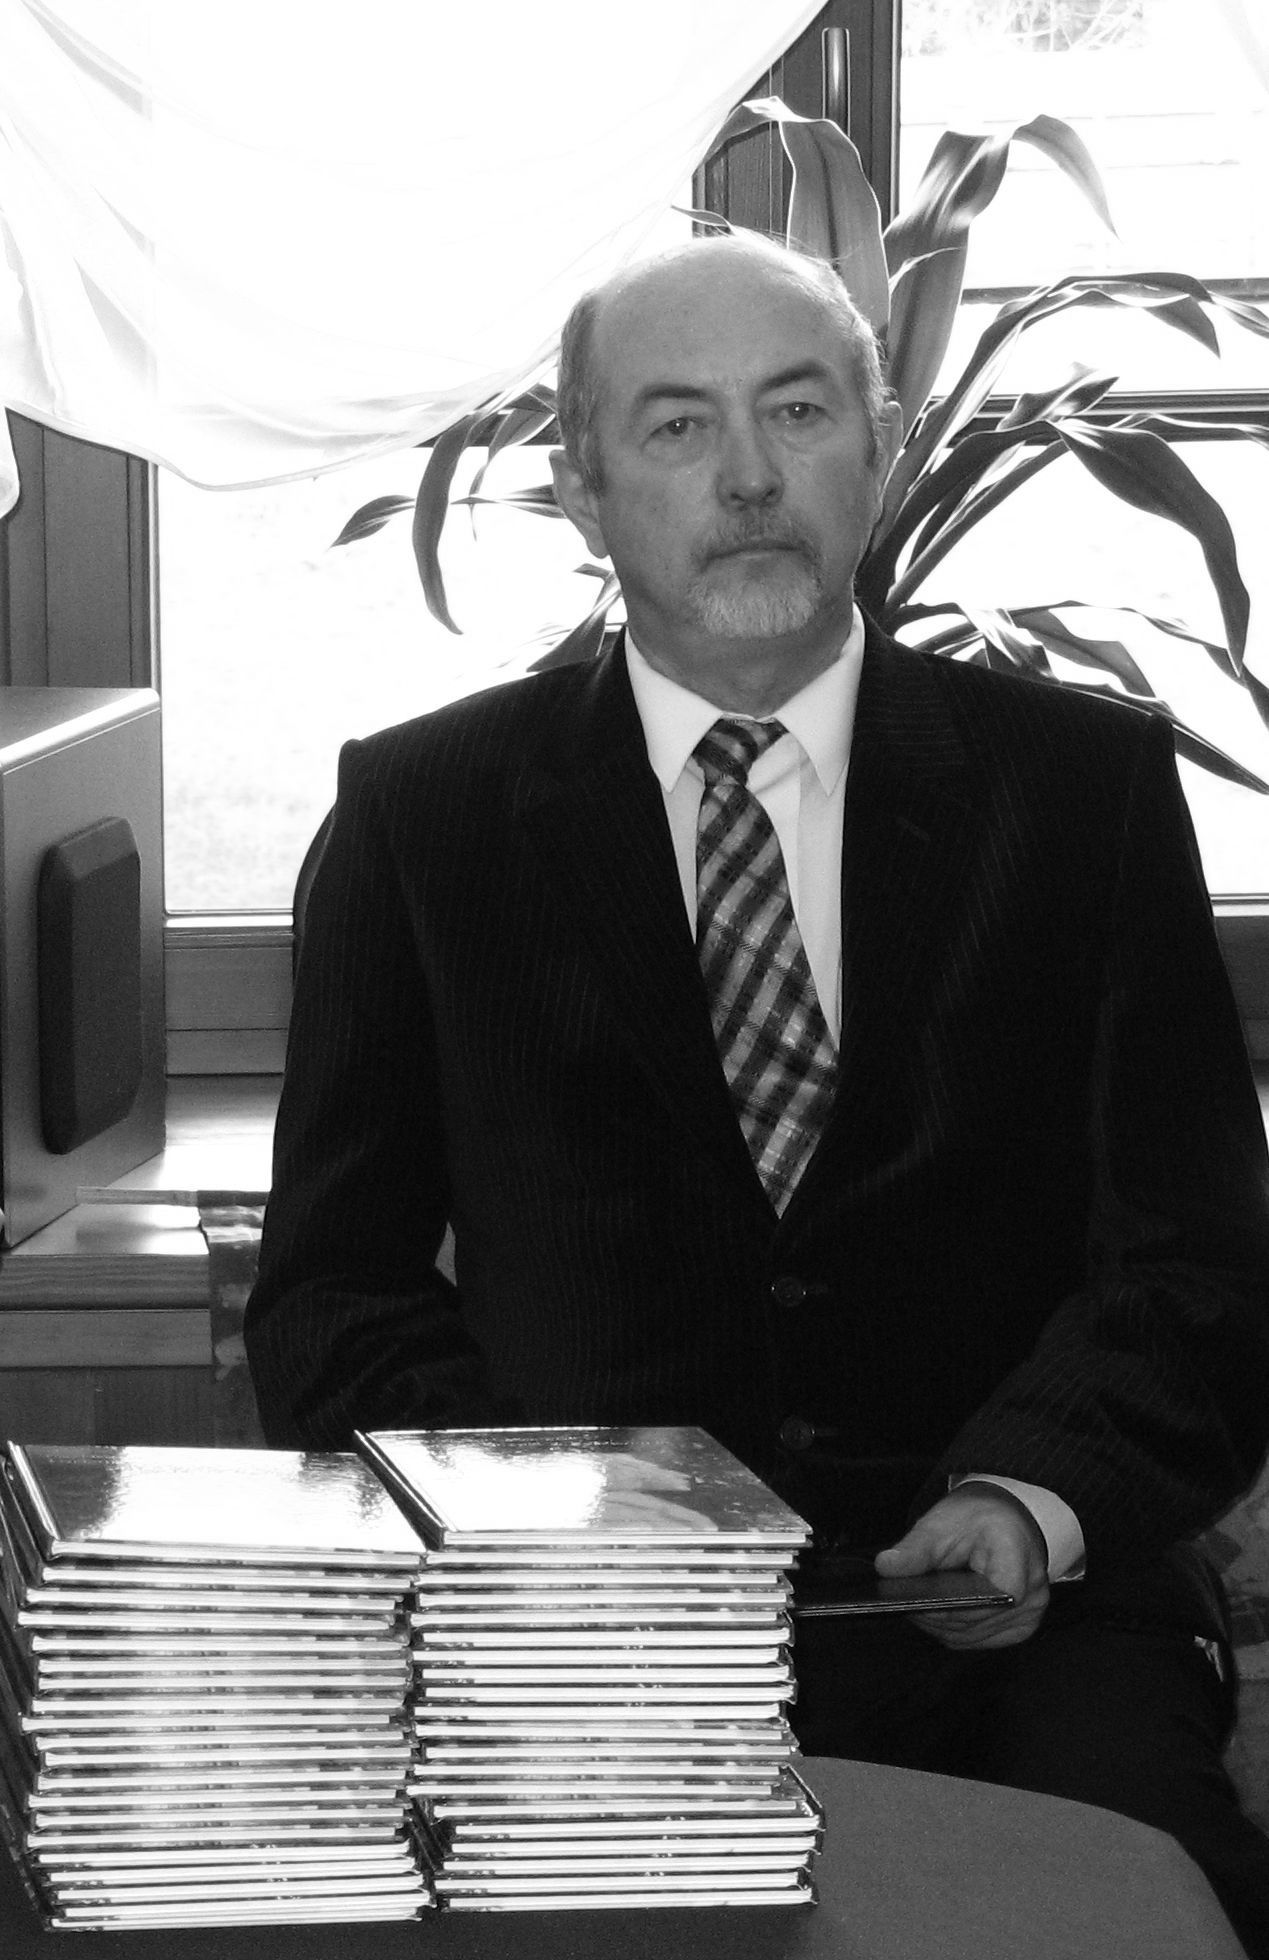 Zdzisaw Dumowski 1953-2018